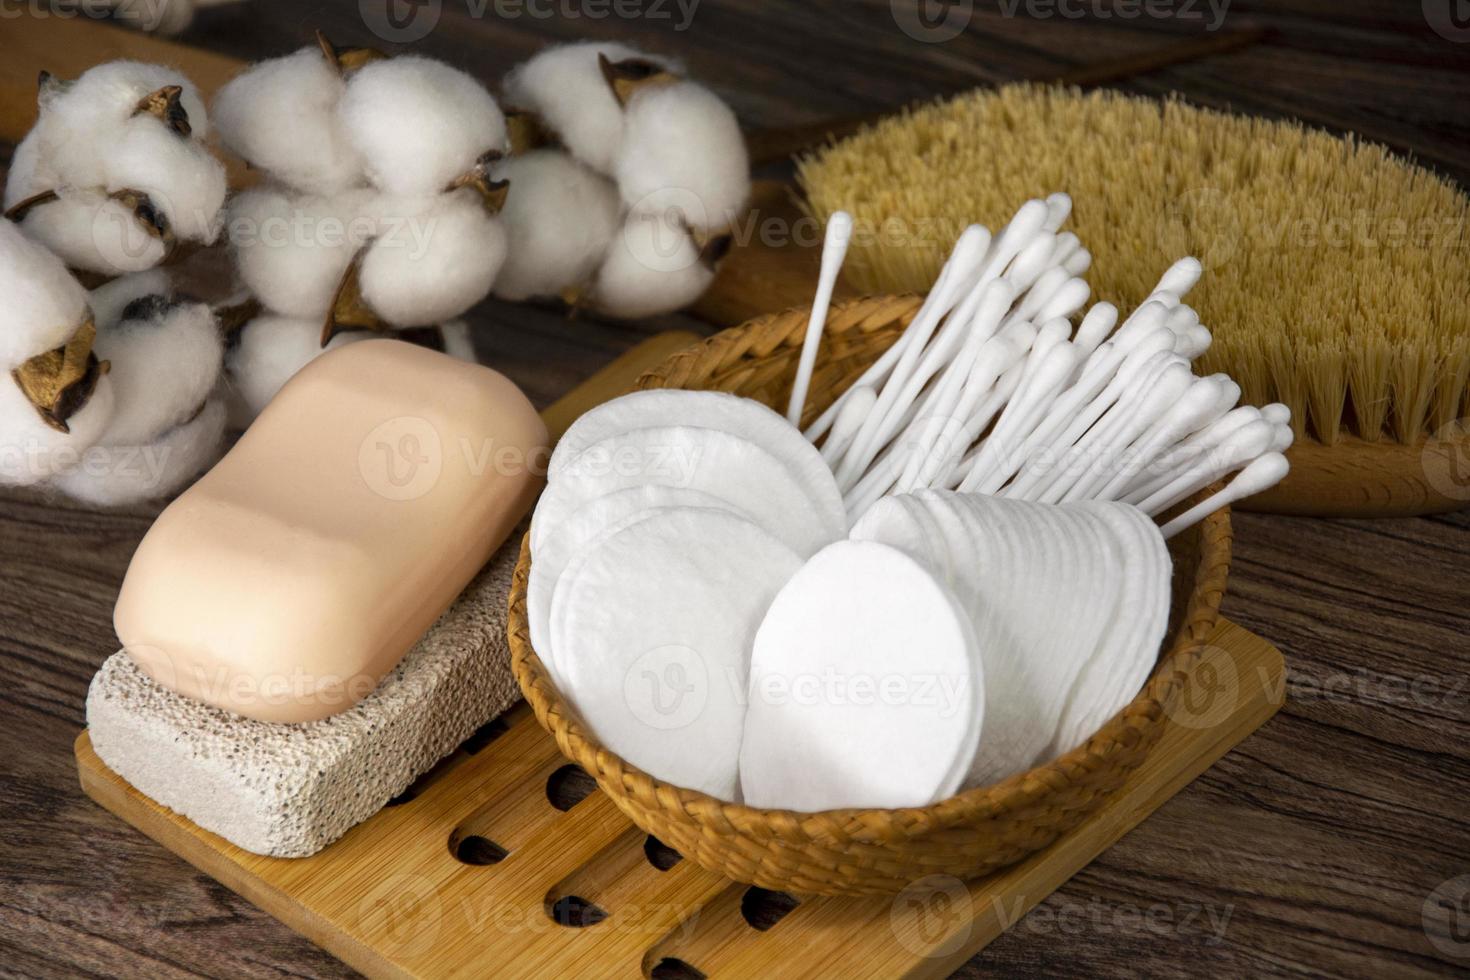 cotonetes, discos de algodão natural, pedra-pomes e sabão. artigos de higiene na cesta. foto